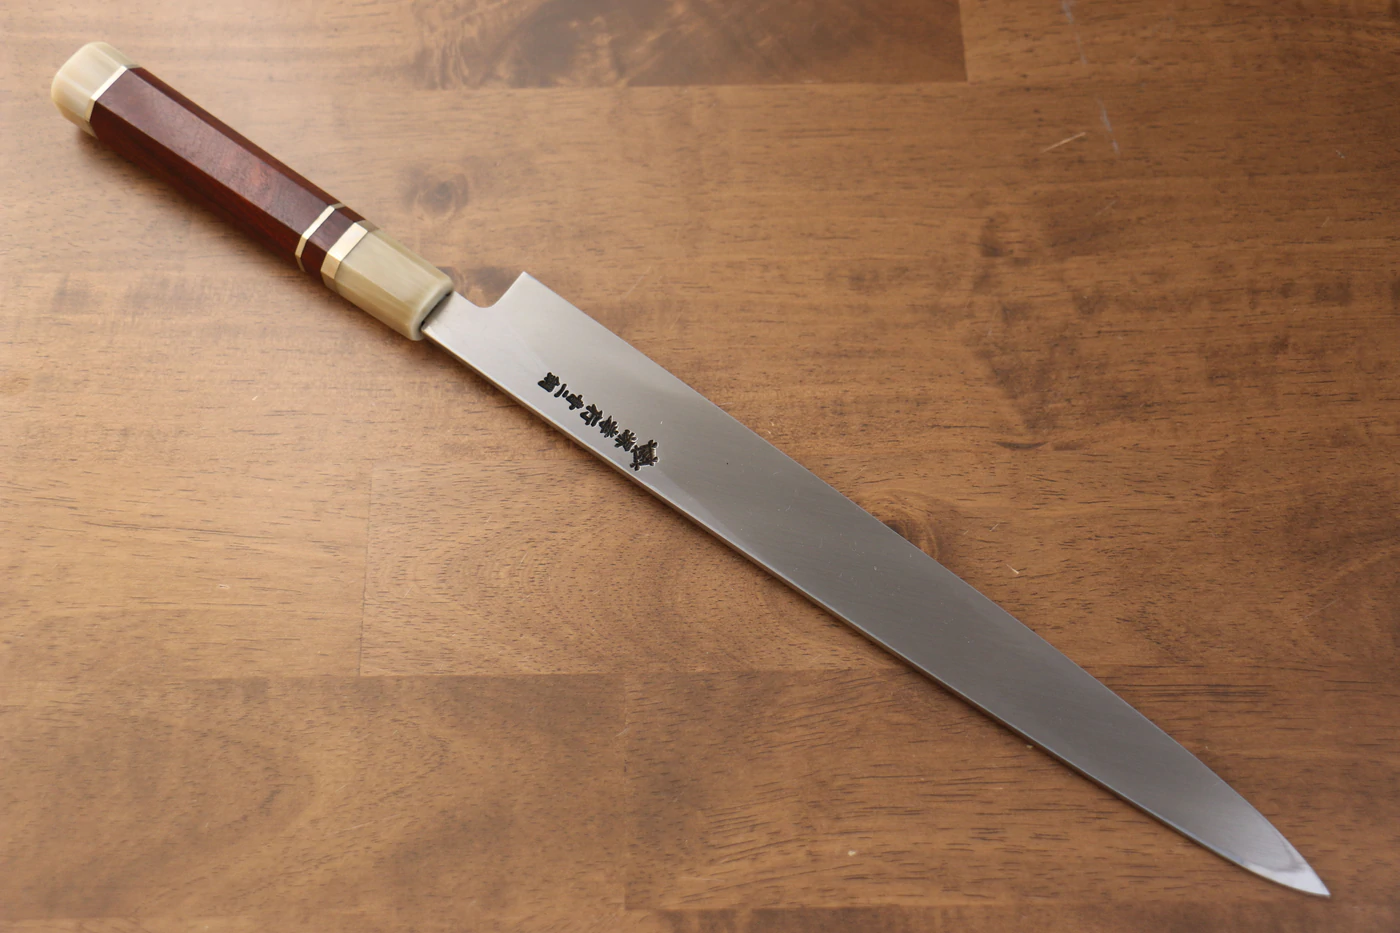 Marke Sakai Takayuki Thien Long Uzushio-Serie, Nr. 2 blauer Stahl mit geschnitzter Drachenform, Yanagiba 300 mm Spezial-Shashimi-Fischmesser, Messergriff aus rotem Ebenholz, inklusive Messerscheide, hochwertiges echtes japanisches Messer 4